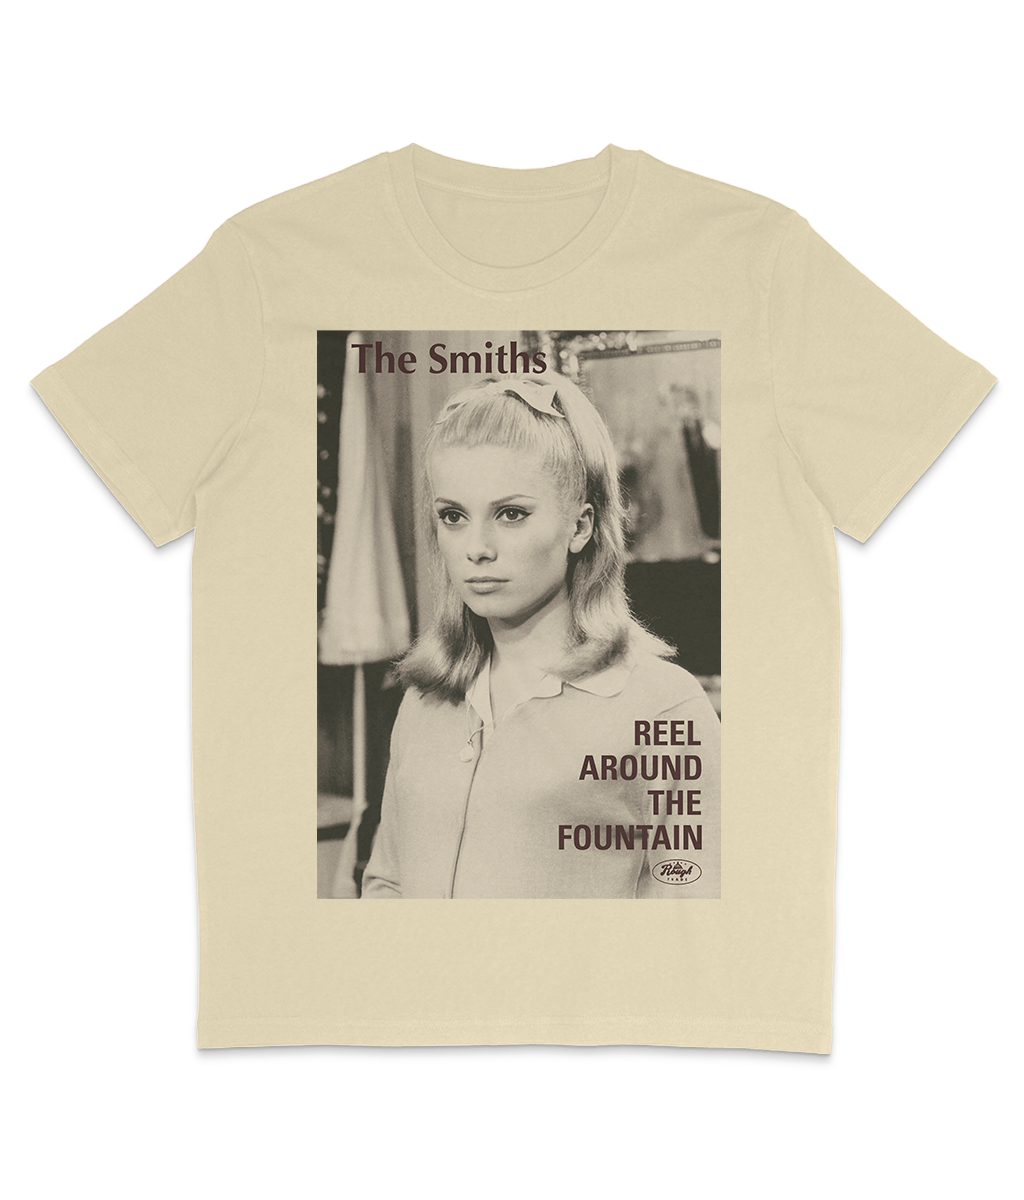 The Smiths - Reel Around The Fountain - 1983 - Catherine Deneuve